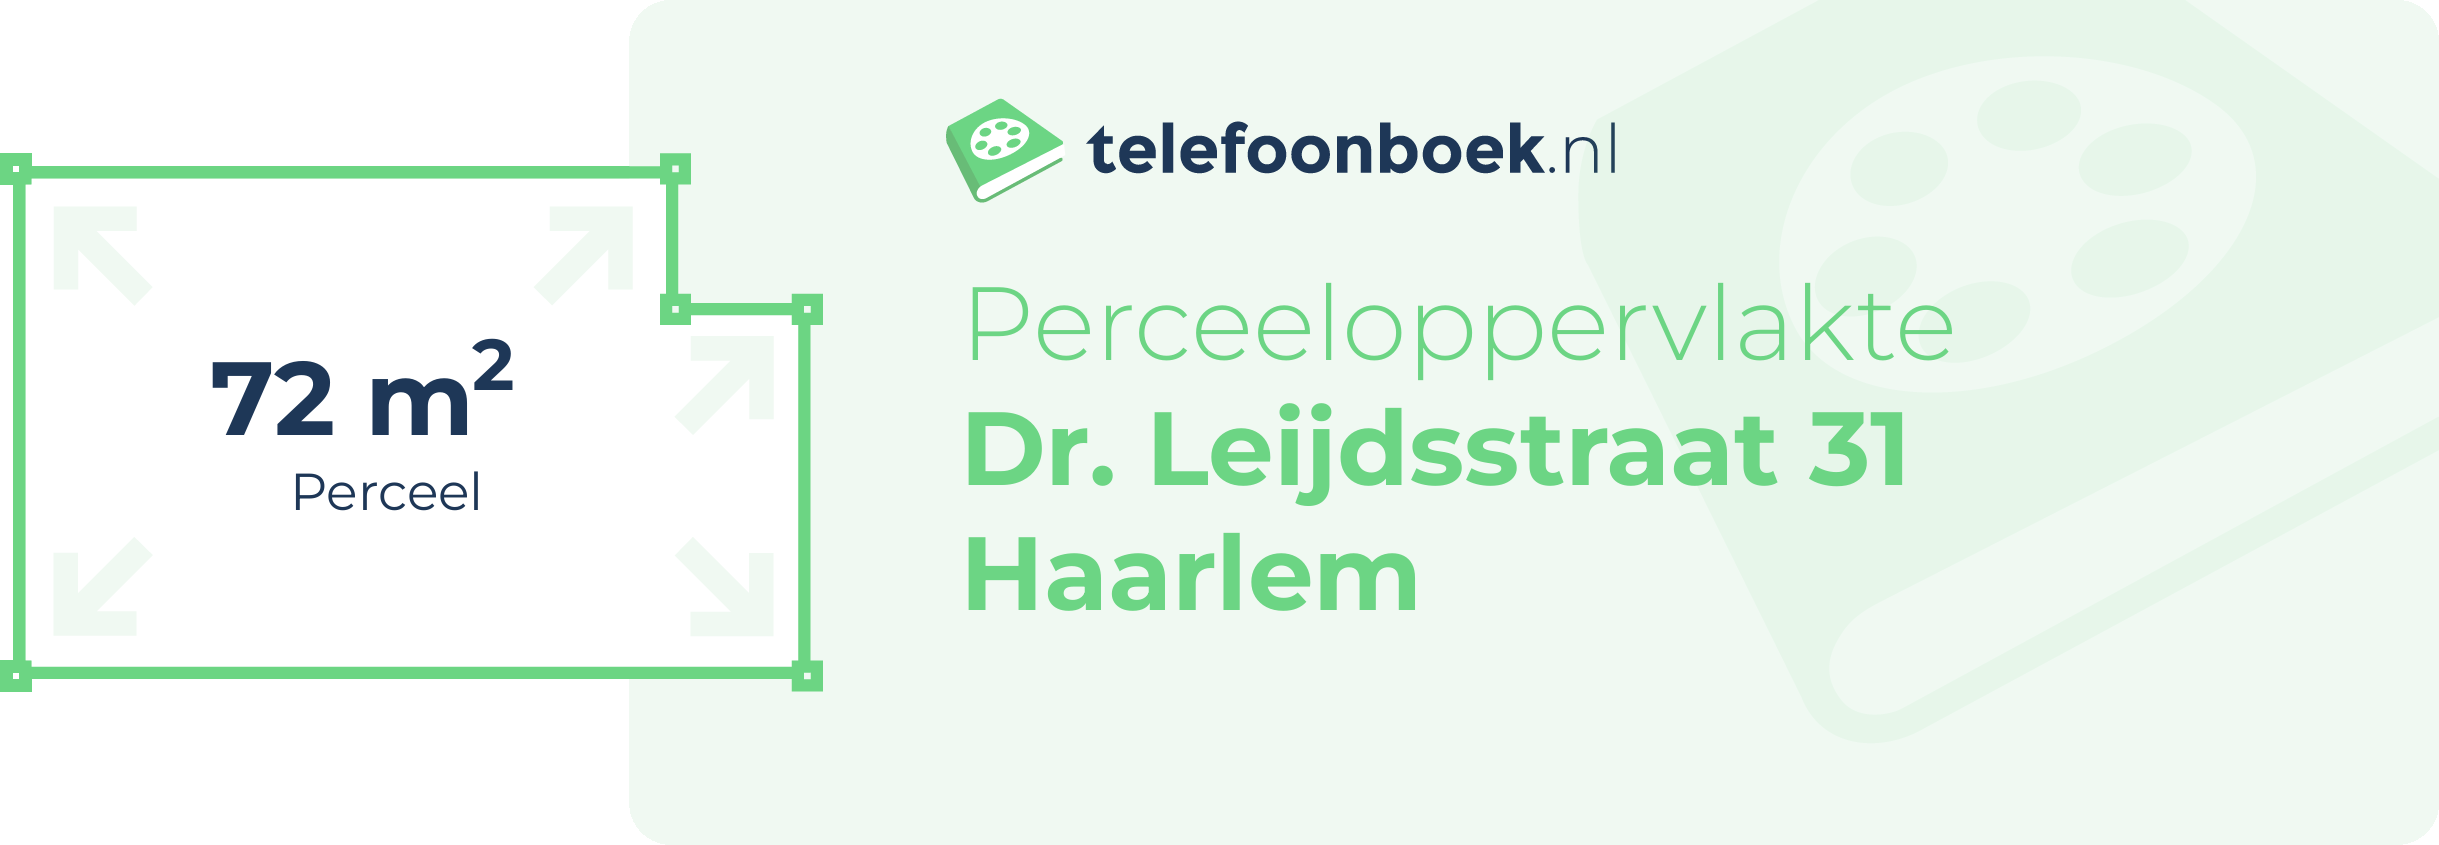 Perceeloppervlakte Dr. Leijdsstraat 31 Haarlem